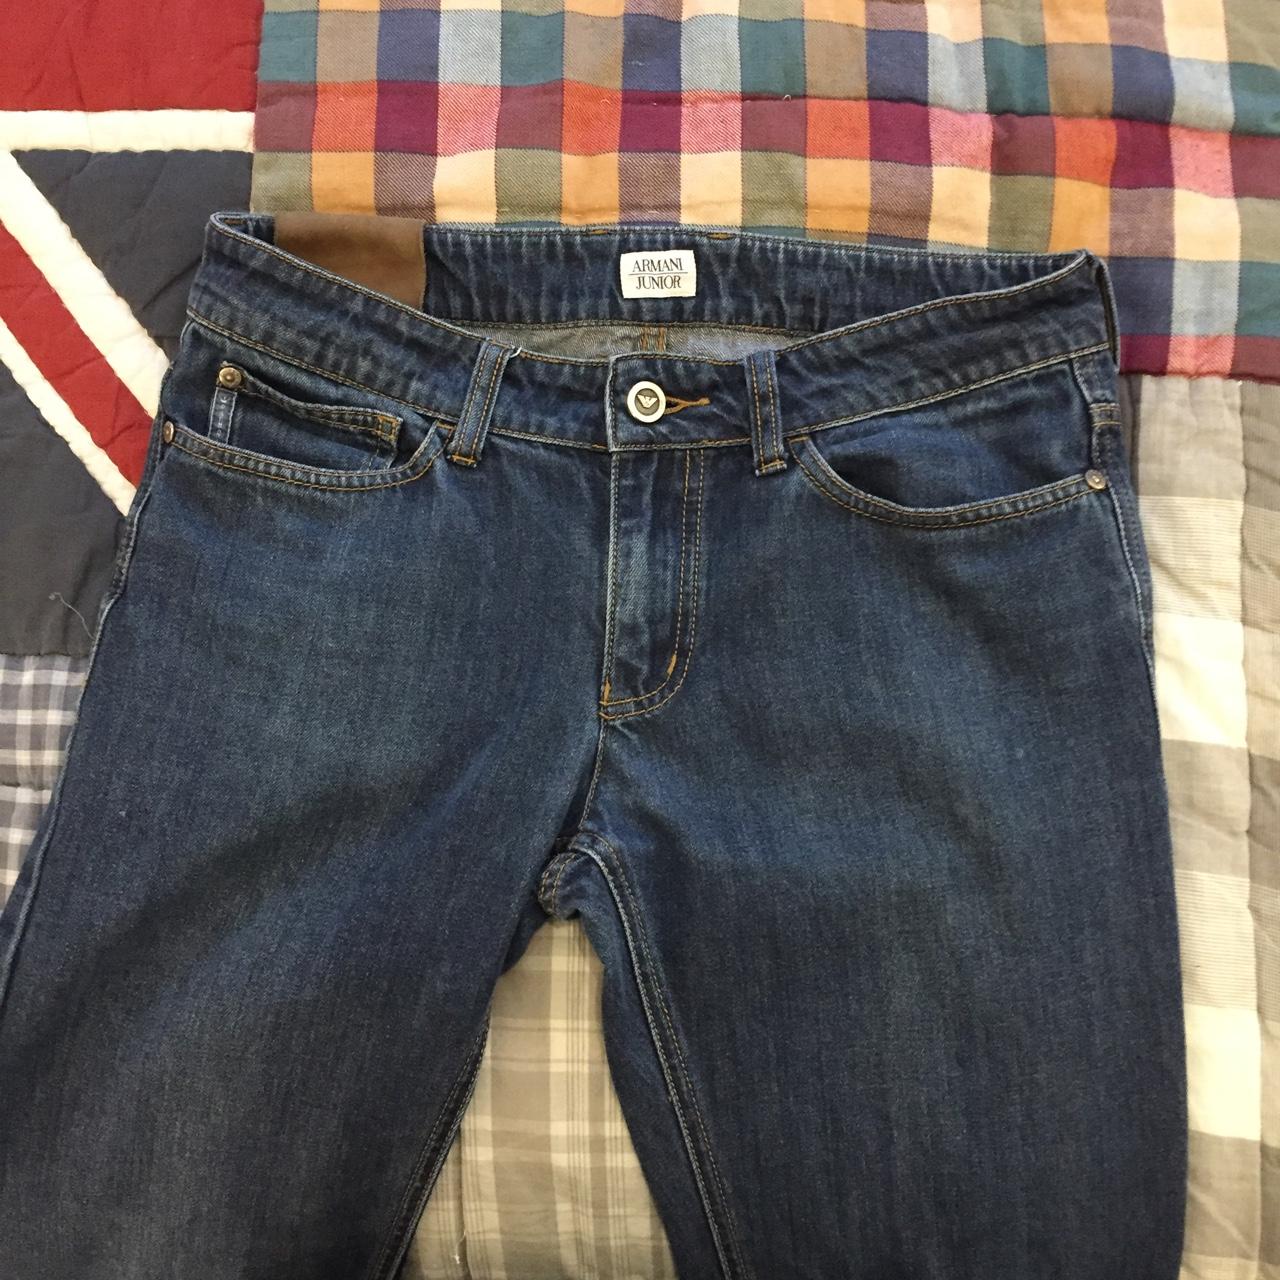 ARMANI JUNIOR JEANS size: 15A 172cm Blue jeans... - Depop